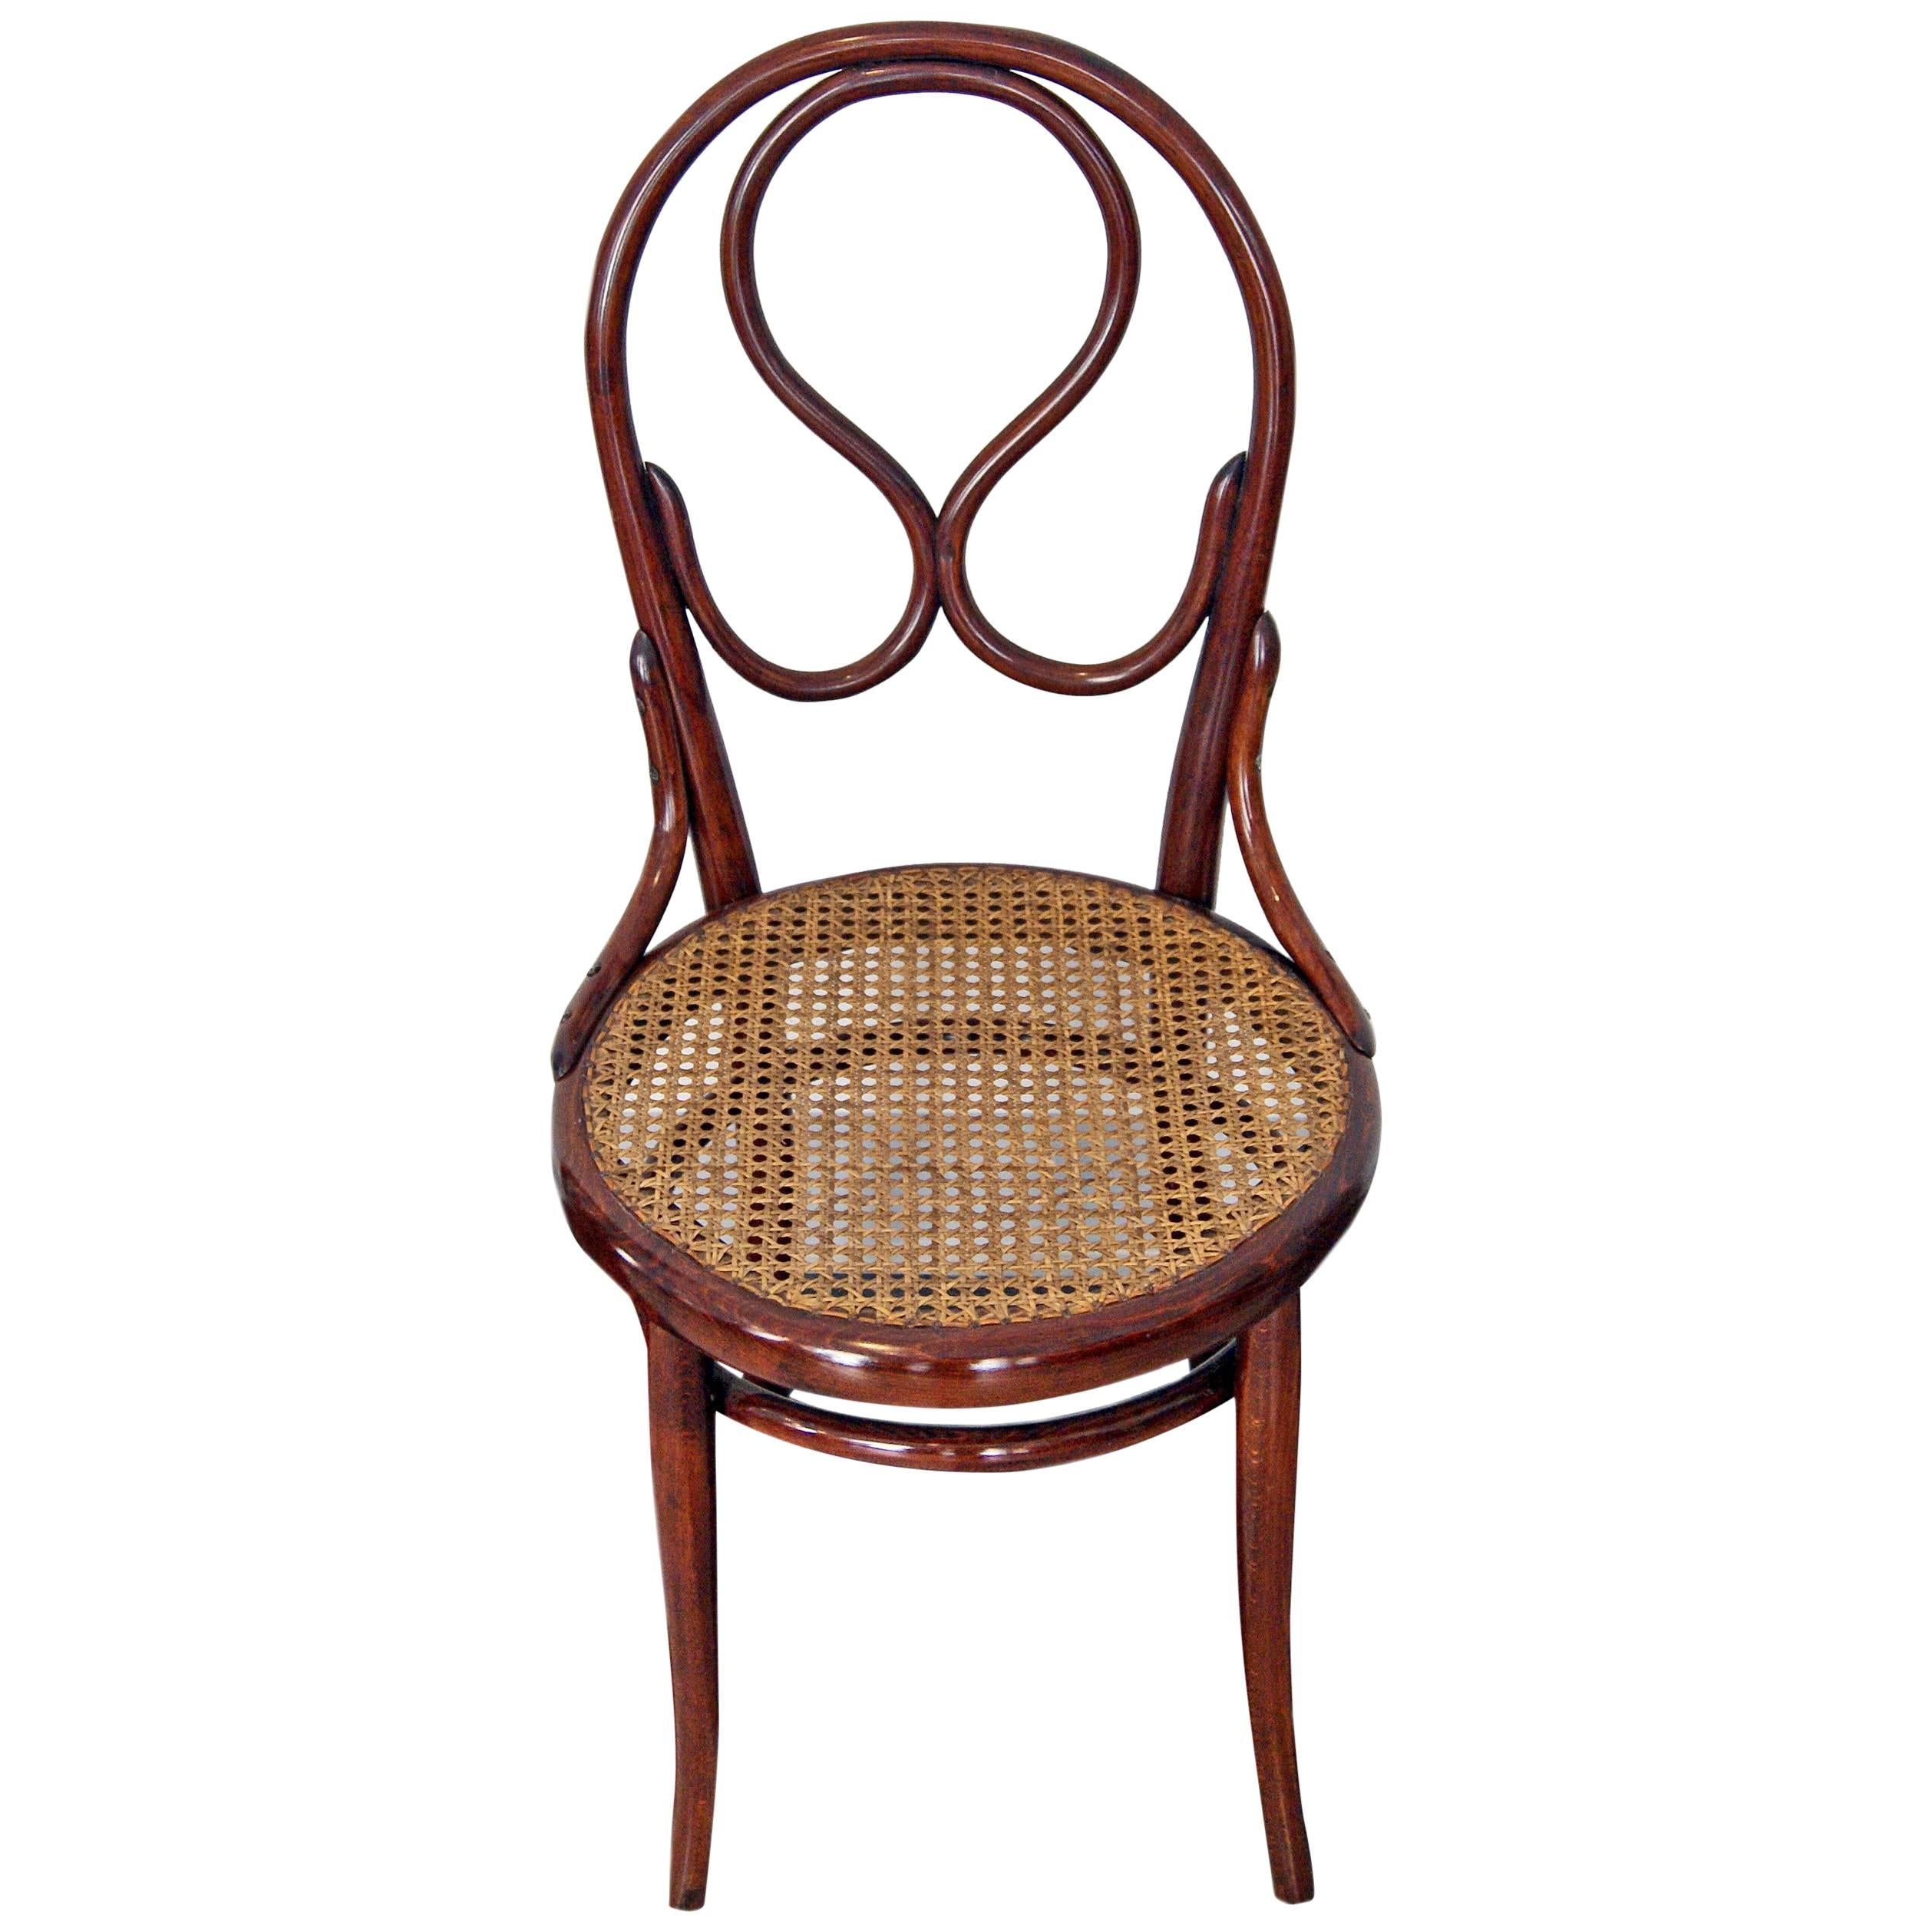 Thonet Vienna Art Nouveau Chair Model 20 Made circa 1880